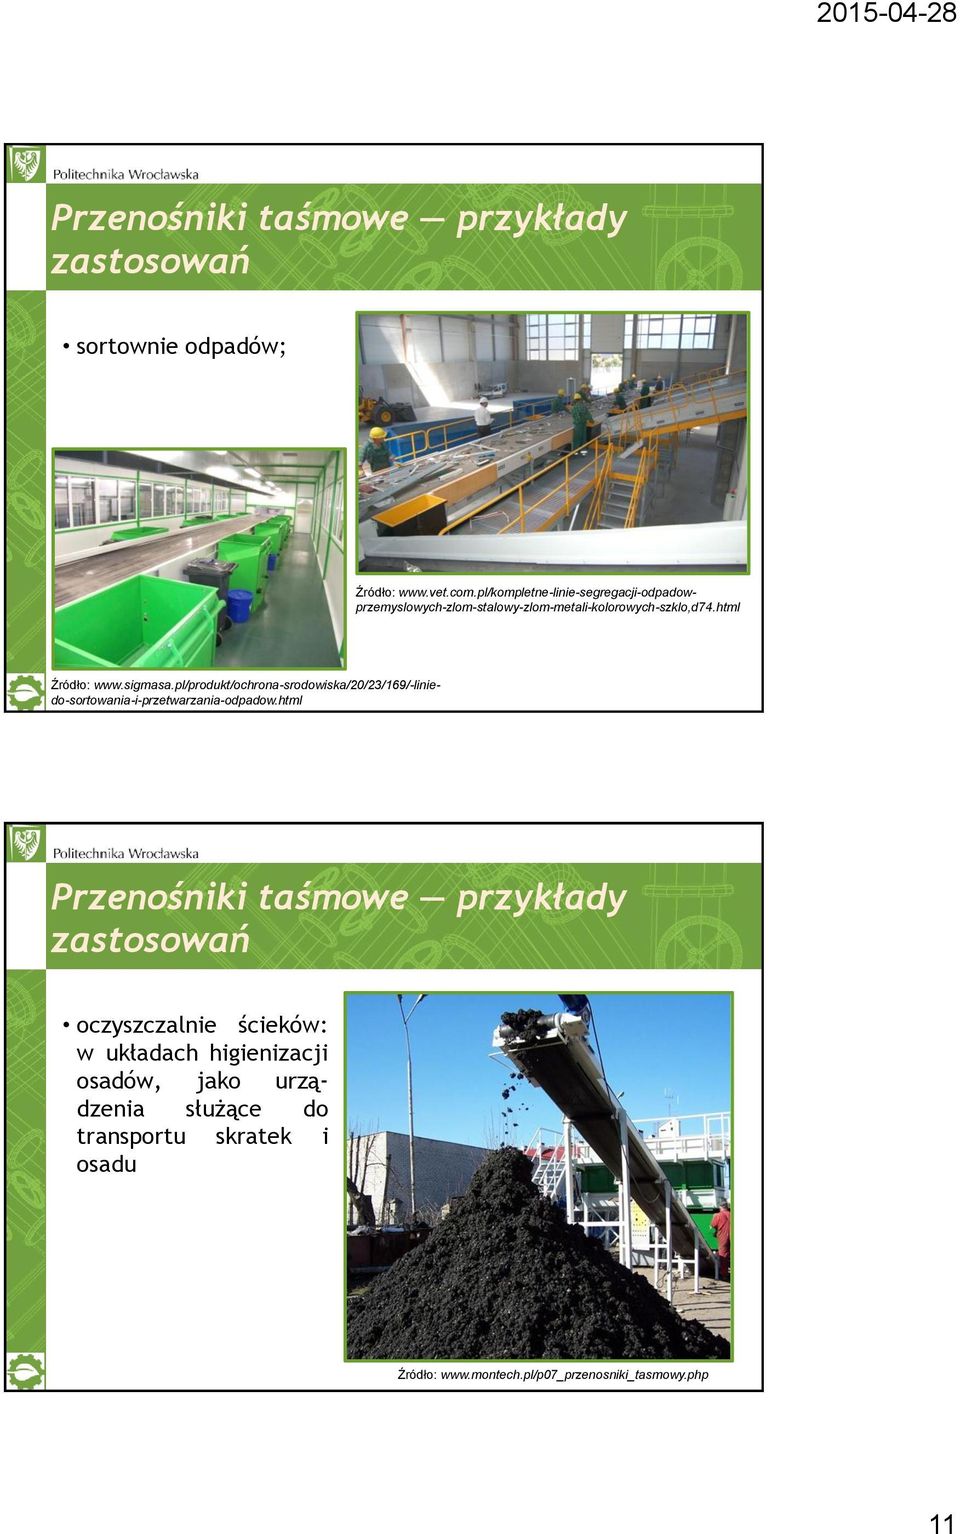 pl/produkt/ochrona-srodowiska/20/23/169/-liniedo-sortowania-i-przetwarzania-odpadow.